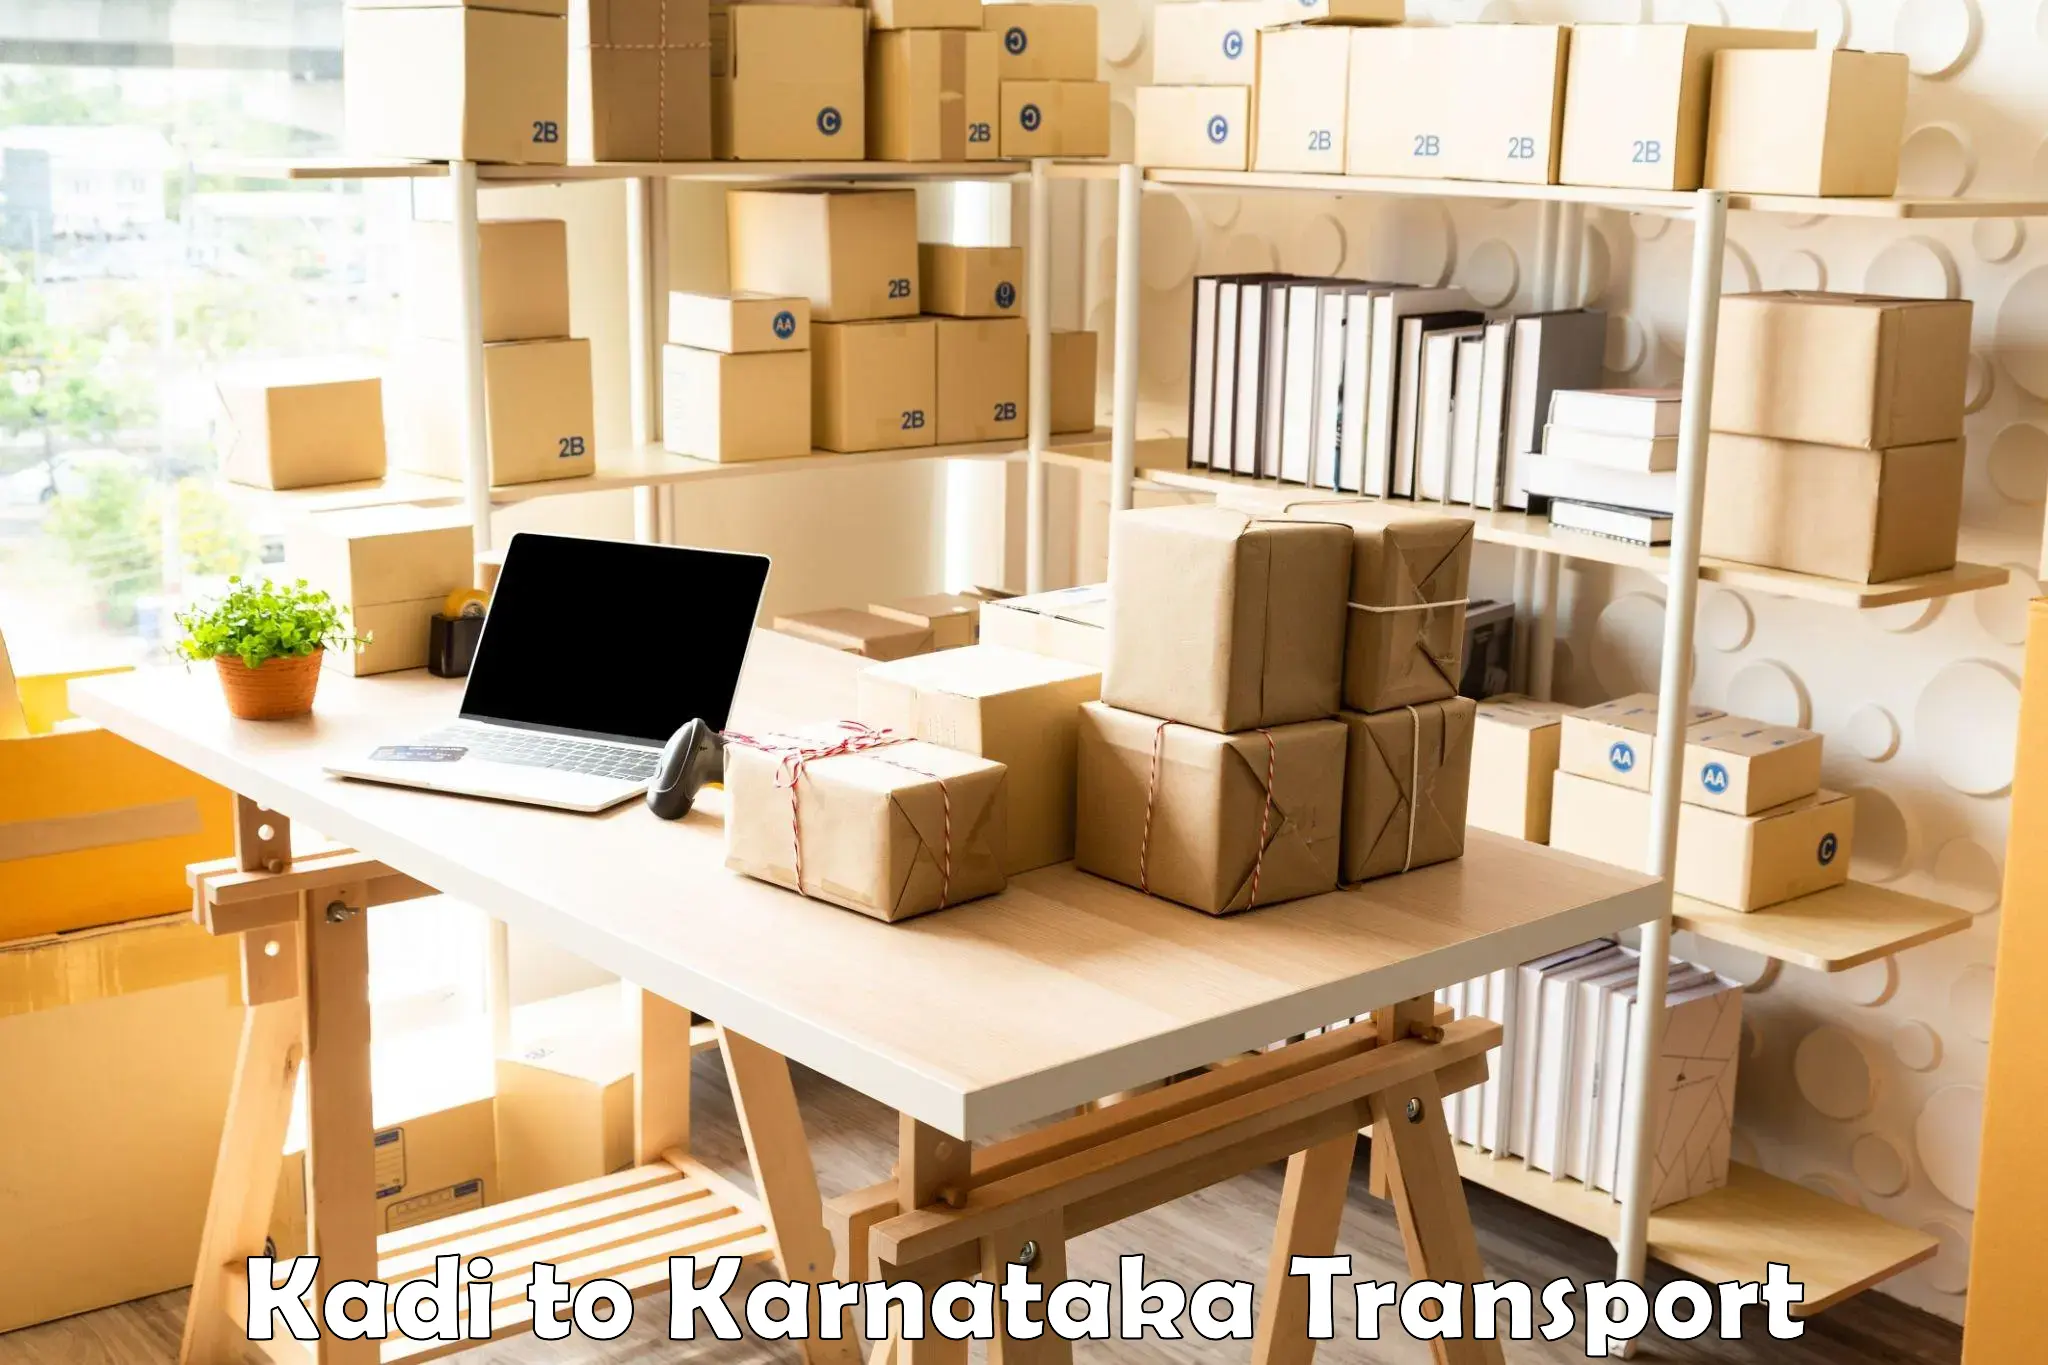 Air freight transport services Kadi to Kalaburagi